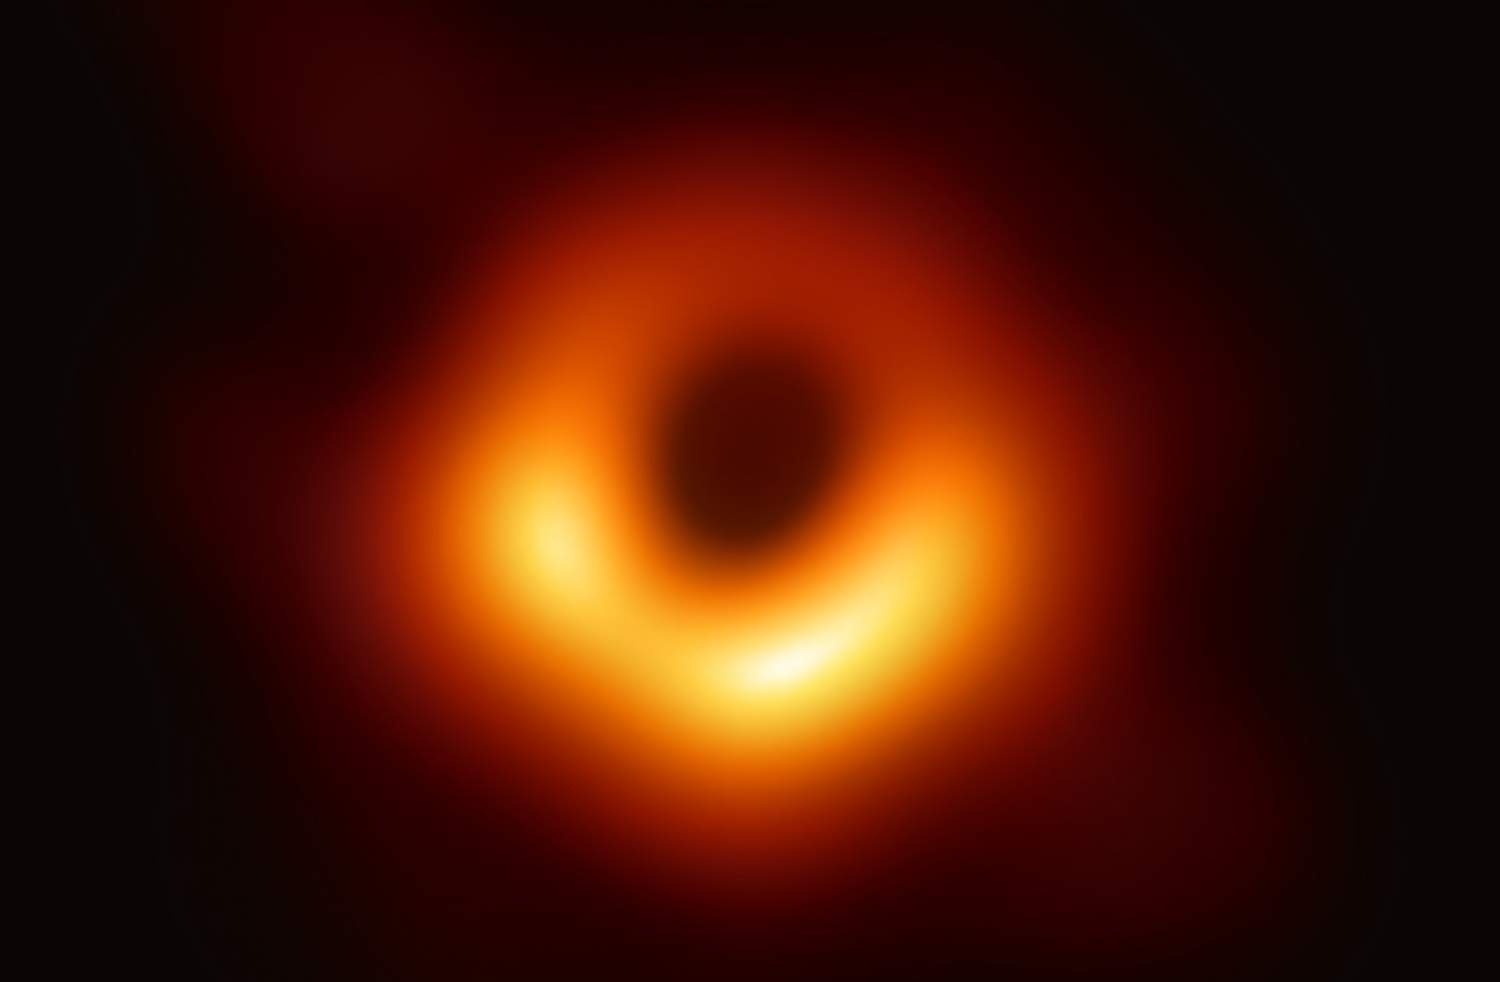 Imagem original do buraco negro na M68 capturado pelo EHT em 2019.